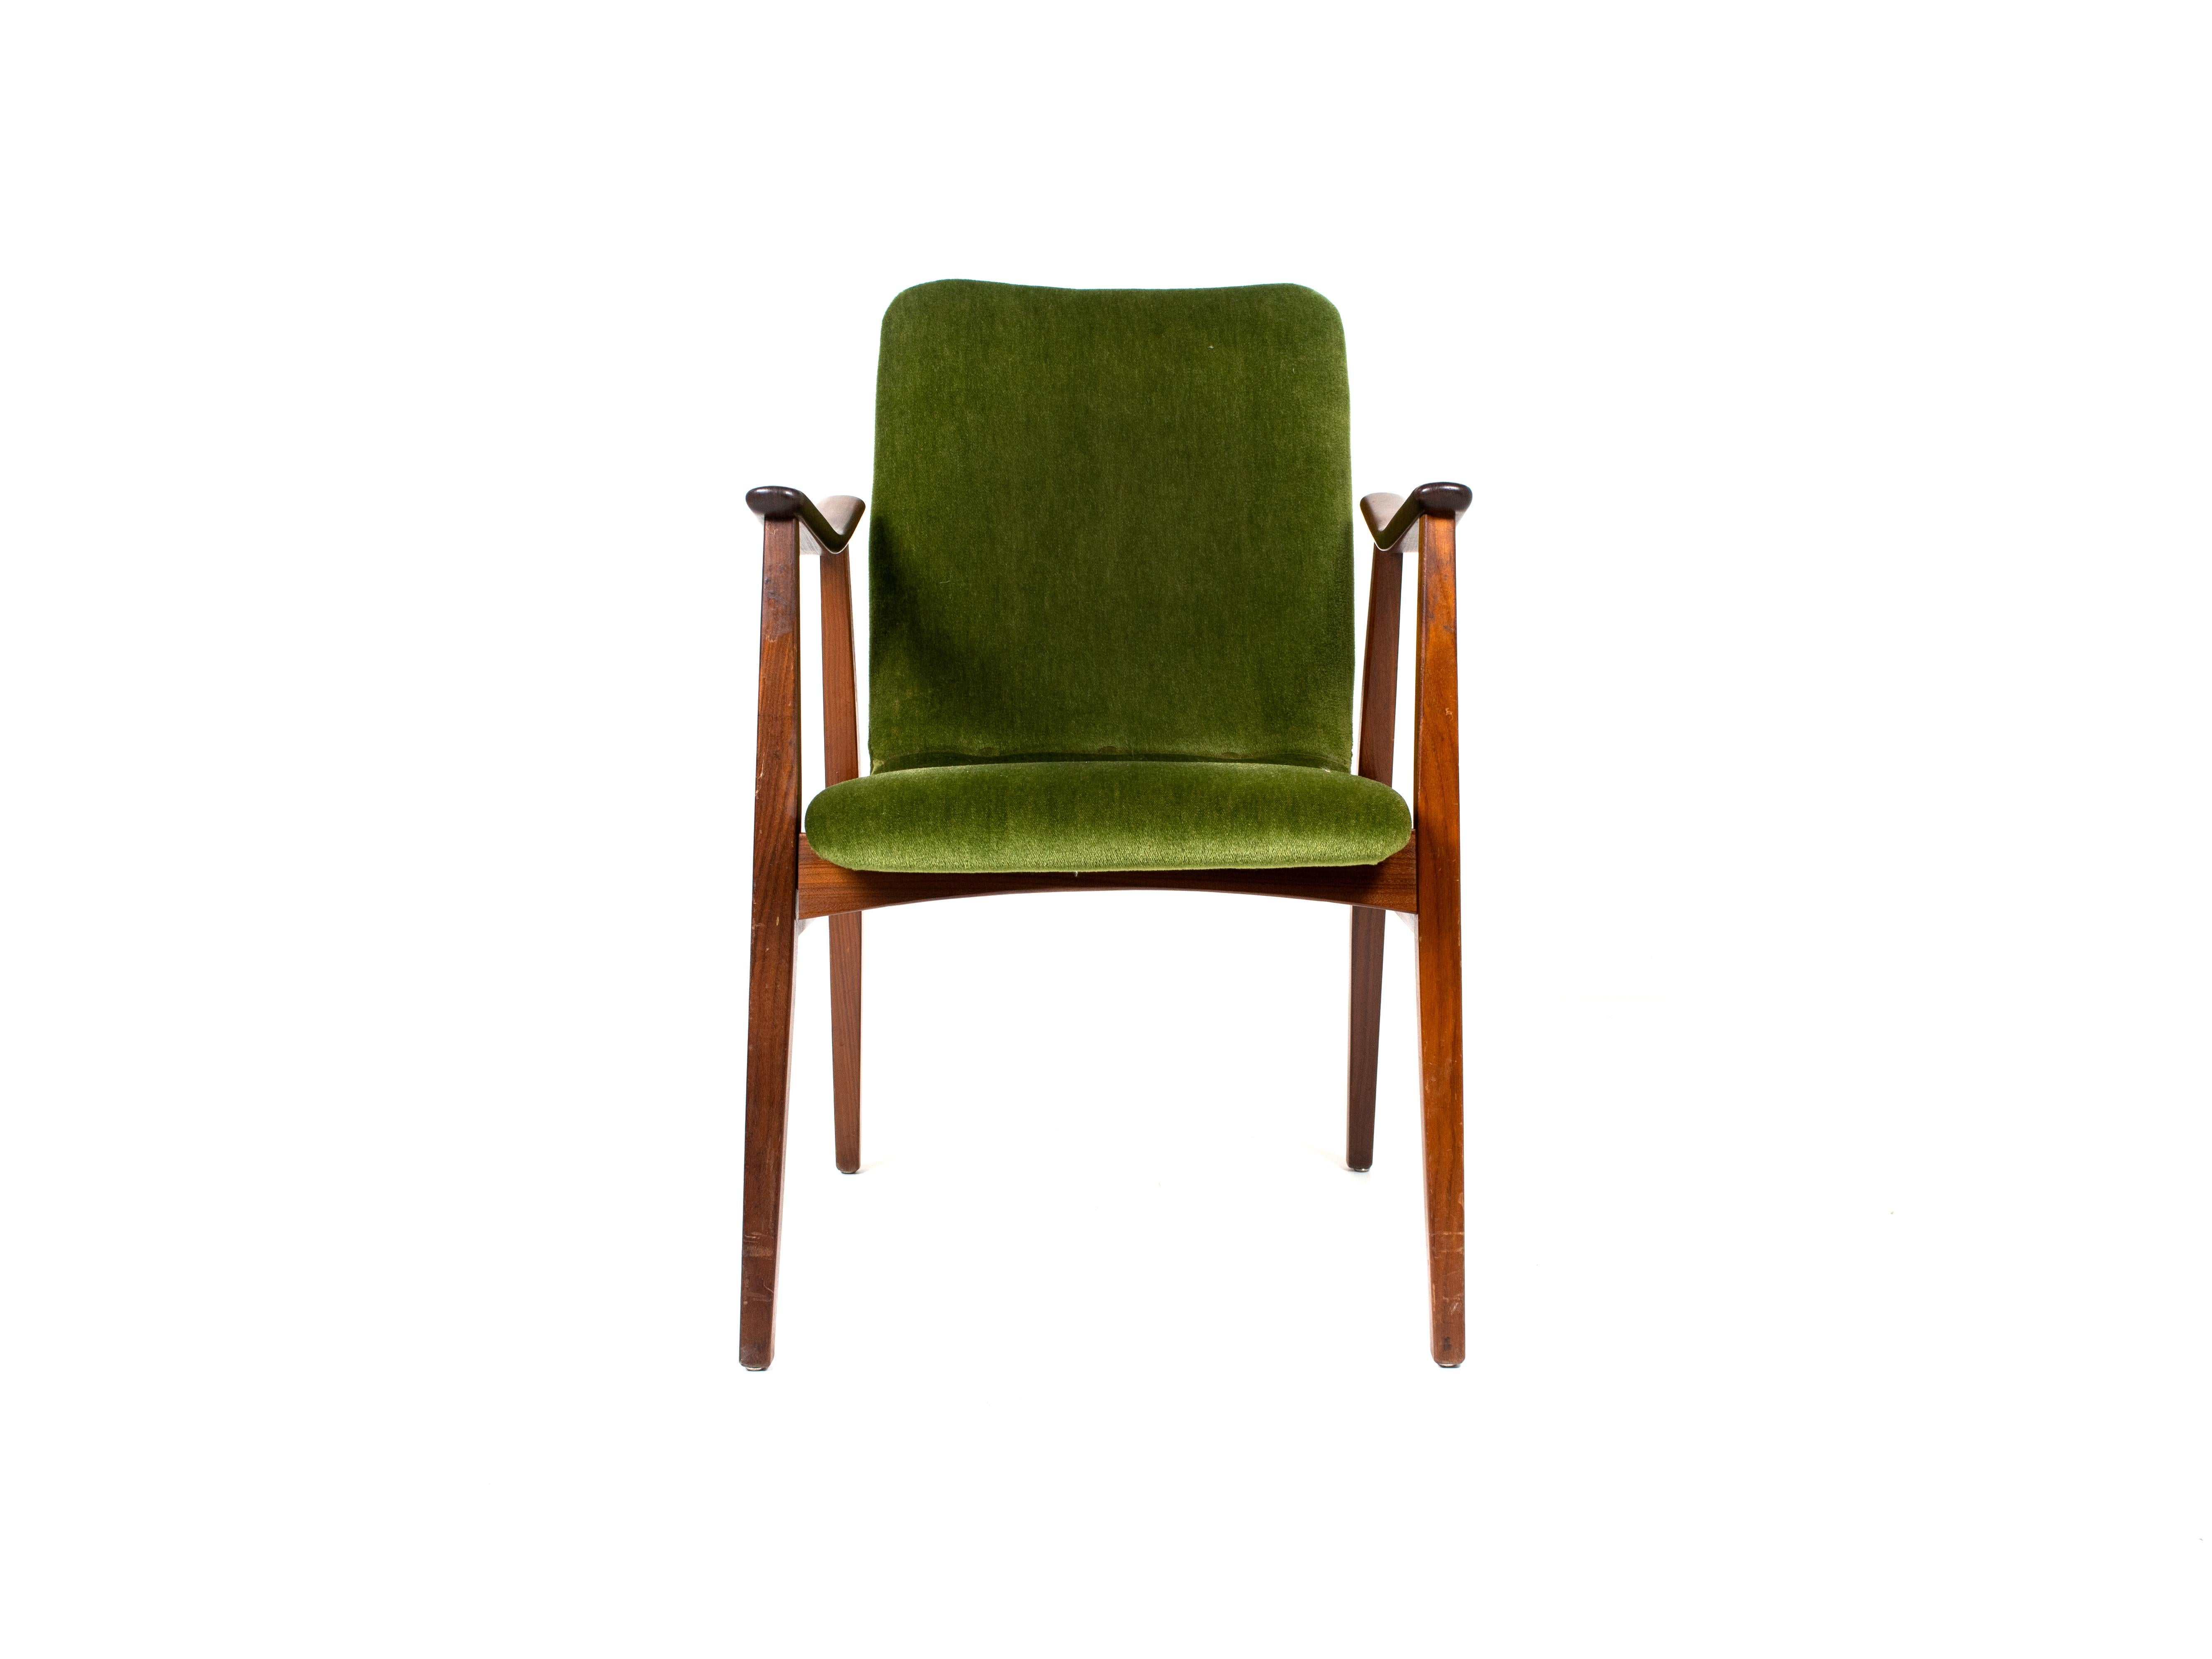 Vintage Lounge Chair in Teak and Green Velvet, Louis Van Teeffelen Style, 1960s 1